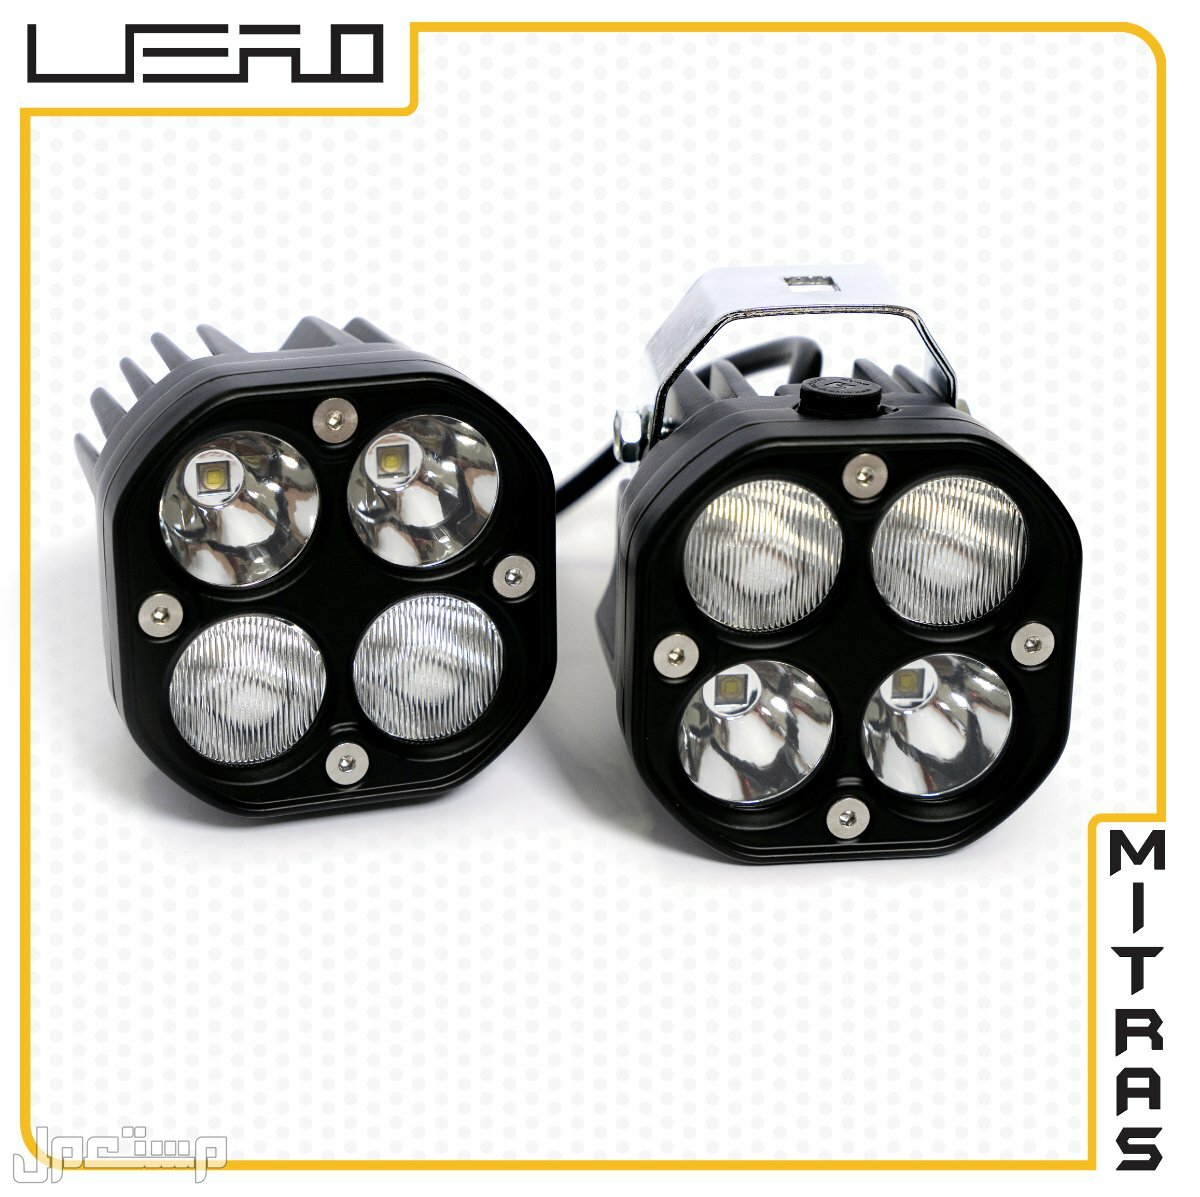 كشافات ضبابية LED  كومبو- ابيض 3 انش 40 وات 12 فولت 3500 لومينز  عالية  الجودة